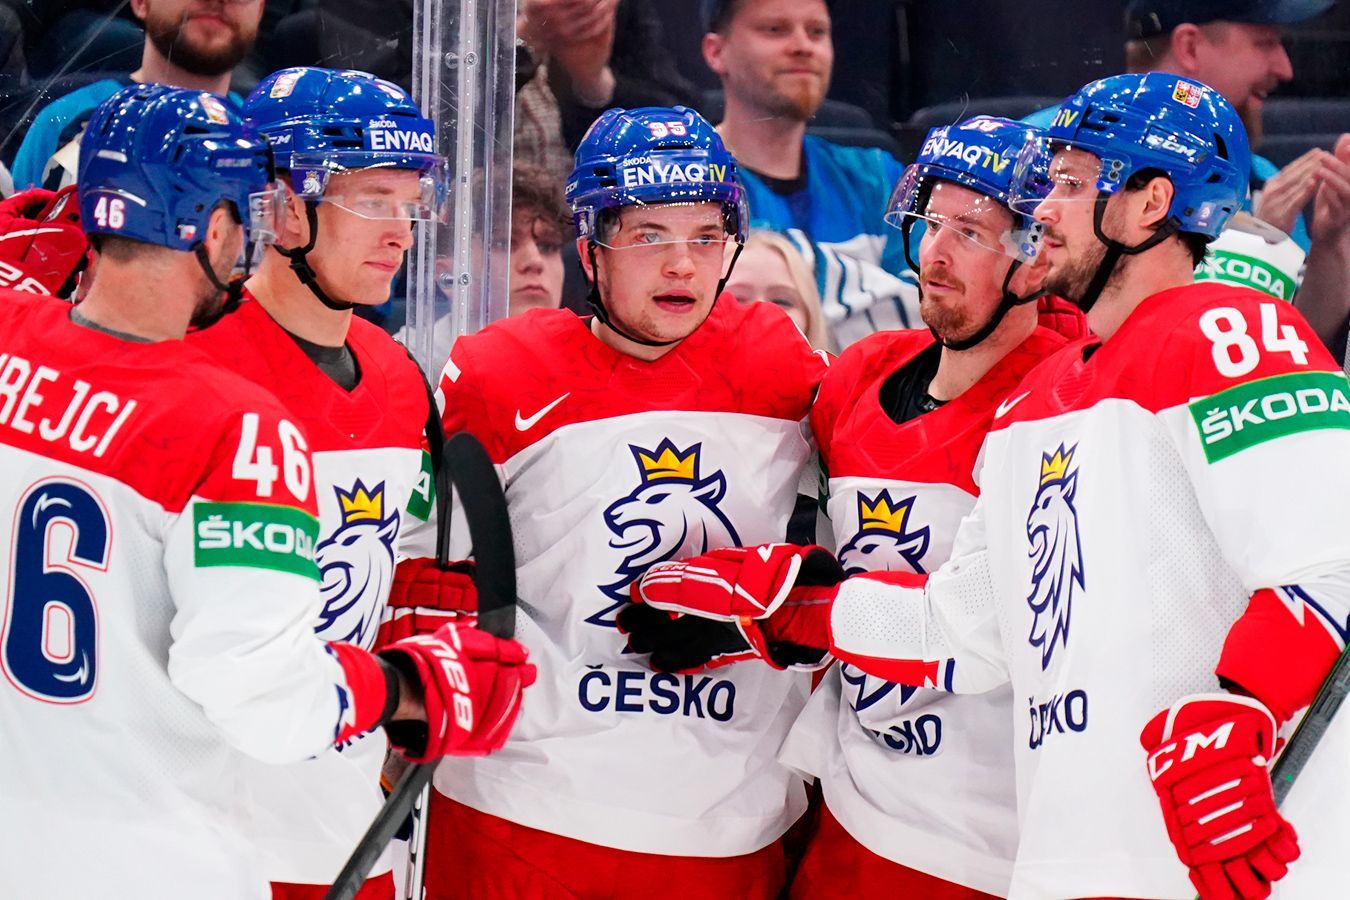 Чехия — Австрия прогноз на матч 17 мая на ЧМ-2022 по хоккею: ставки и коэффициенты на игру